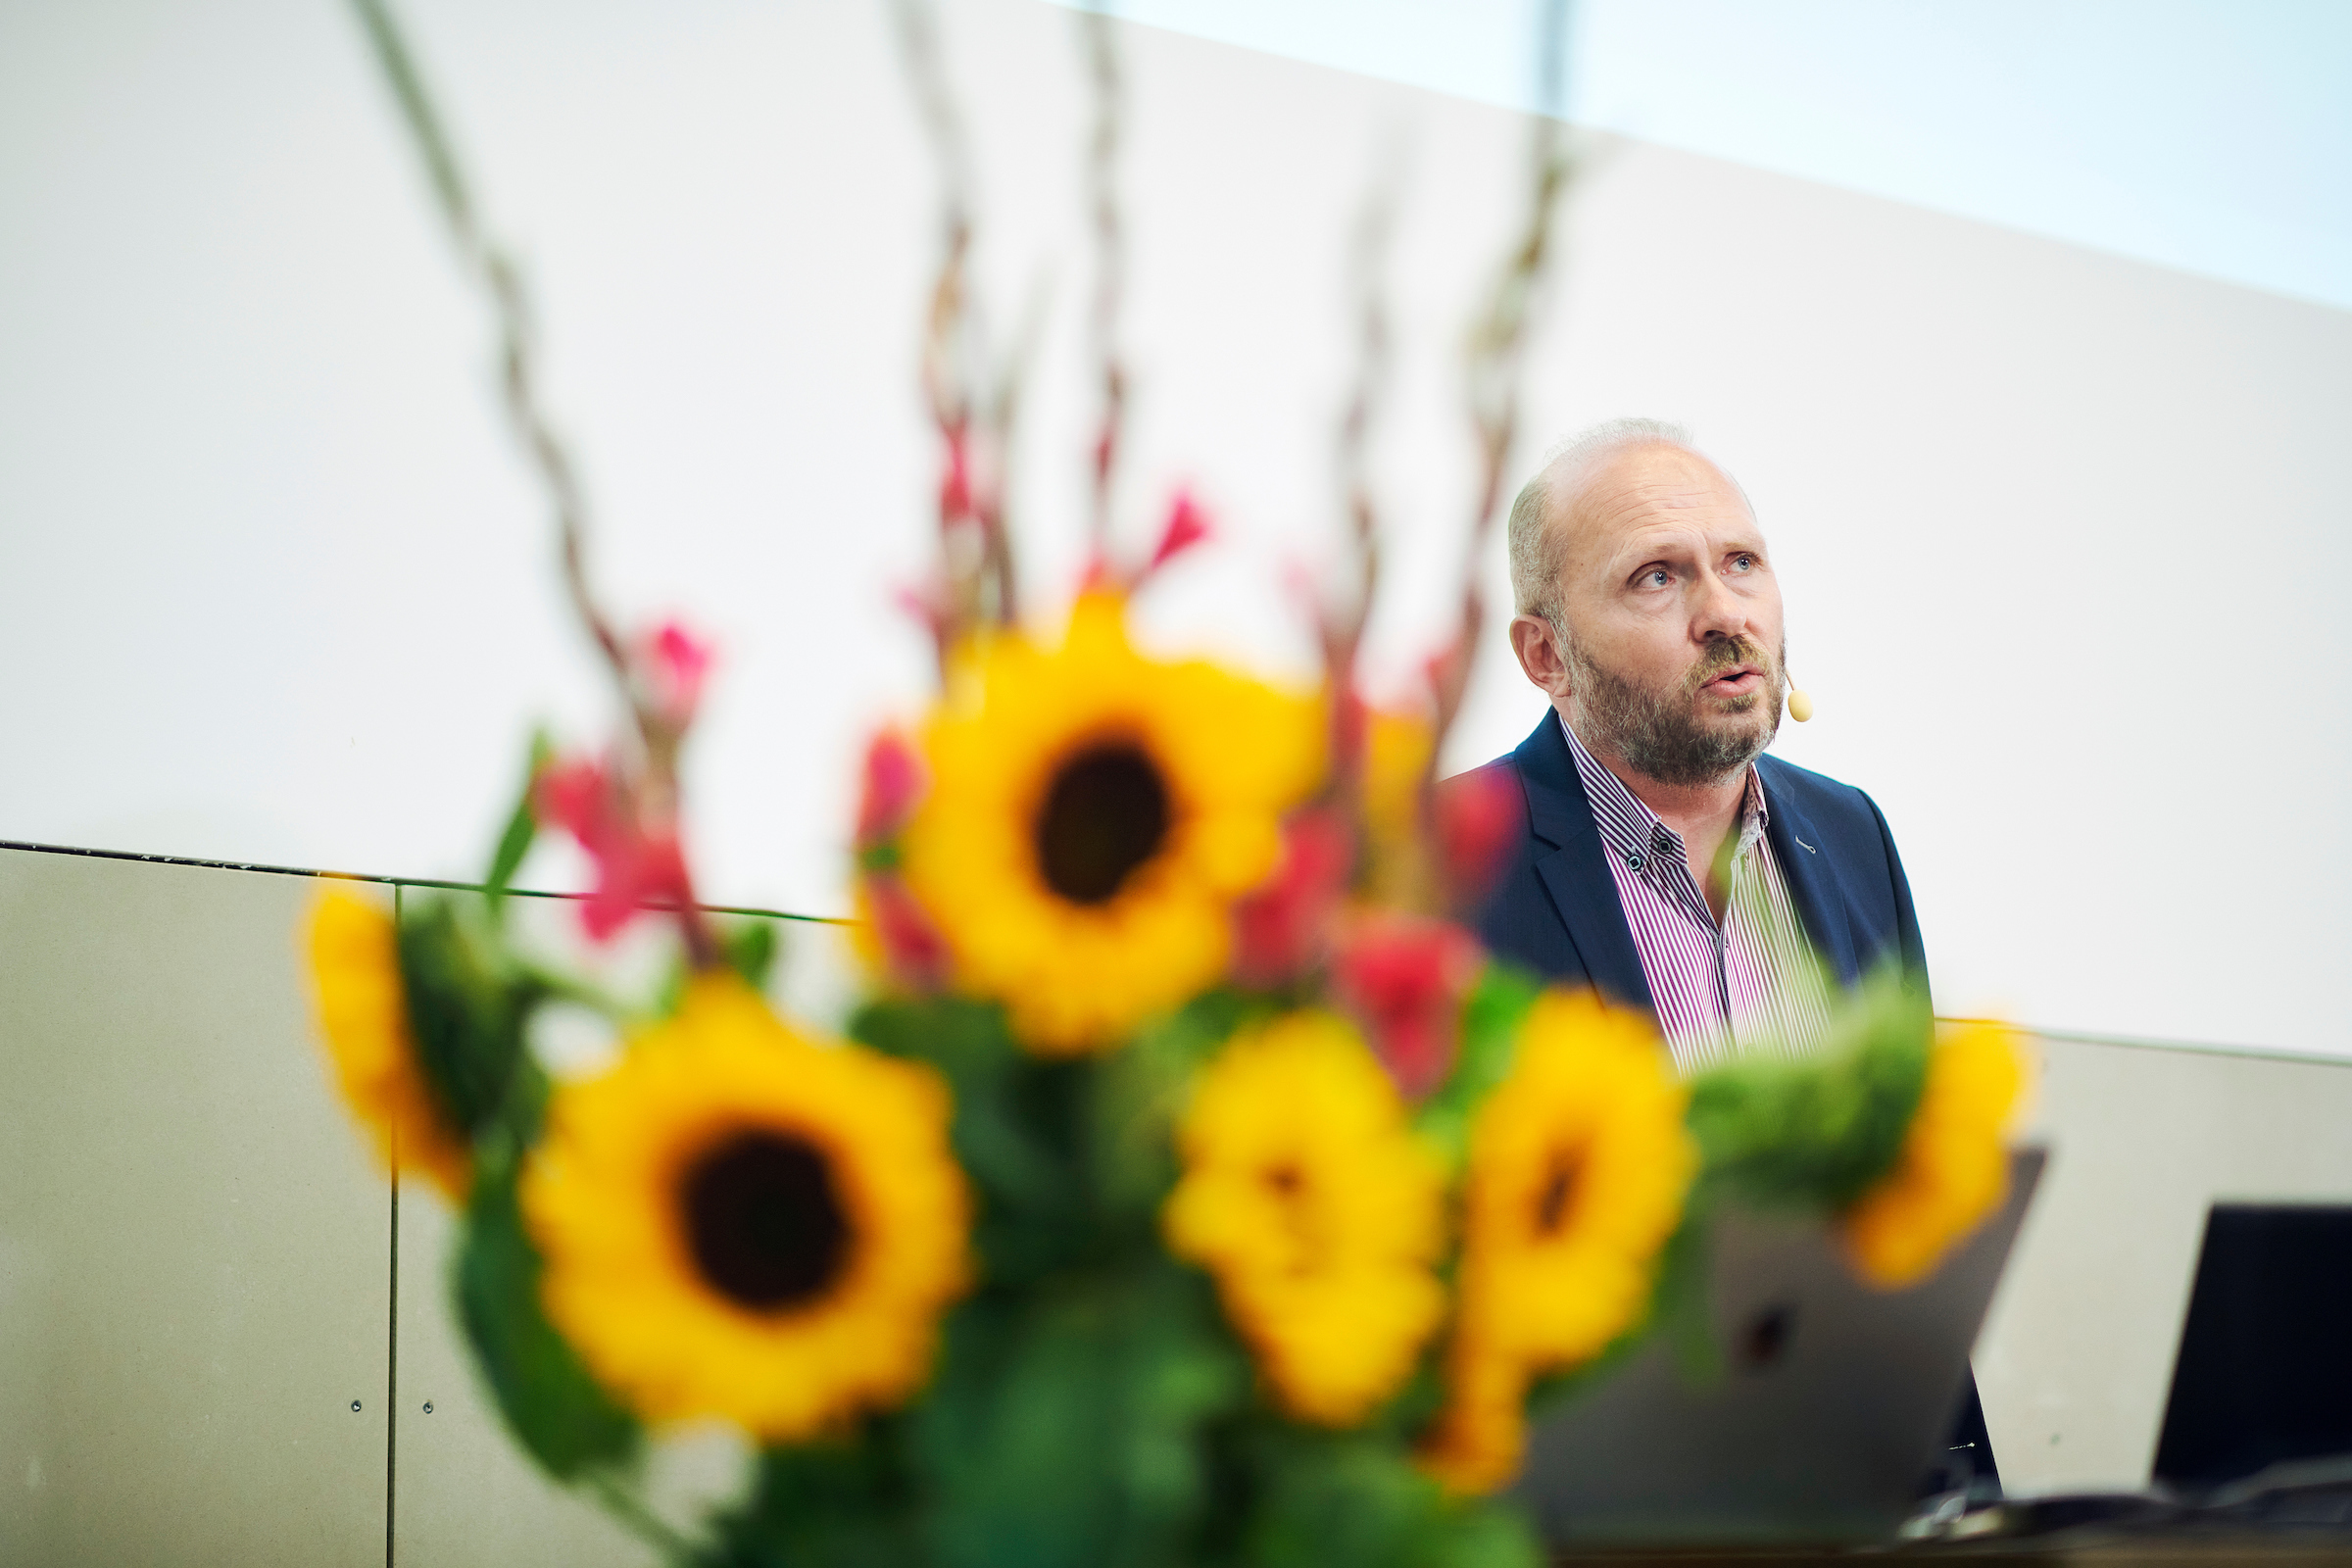 Der Referent Claudio Nigg vom Institut für Sportwissenschaft während seinem Vortrag an der Universität Bern. Neben ihm steht ein Strauss Sonnenblumen als Raumschmuck.